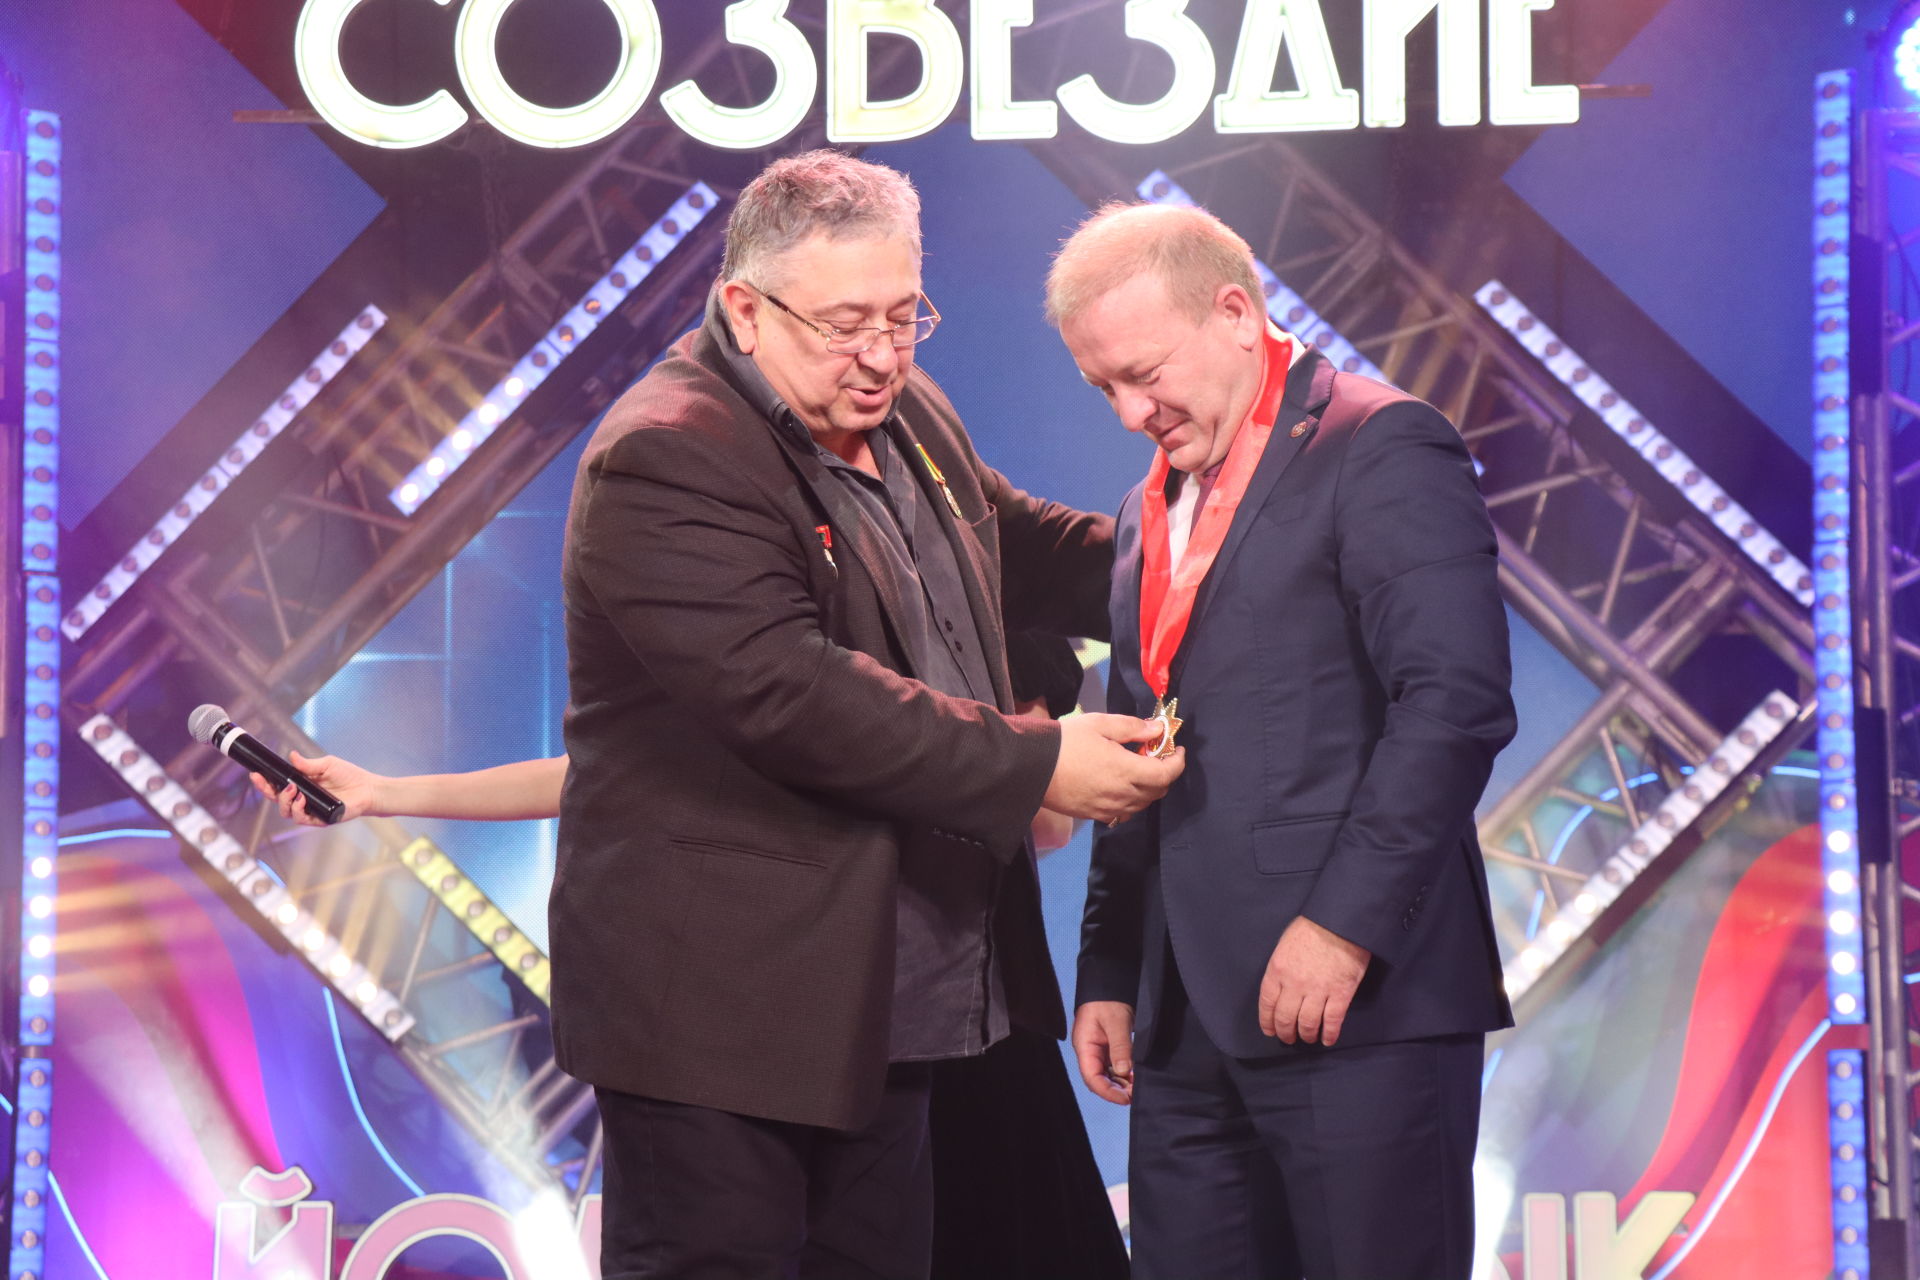 Гала-концерт зонального этапа «Созвездие-Йолдызлык -2022» в Дрожжаном